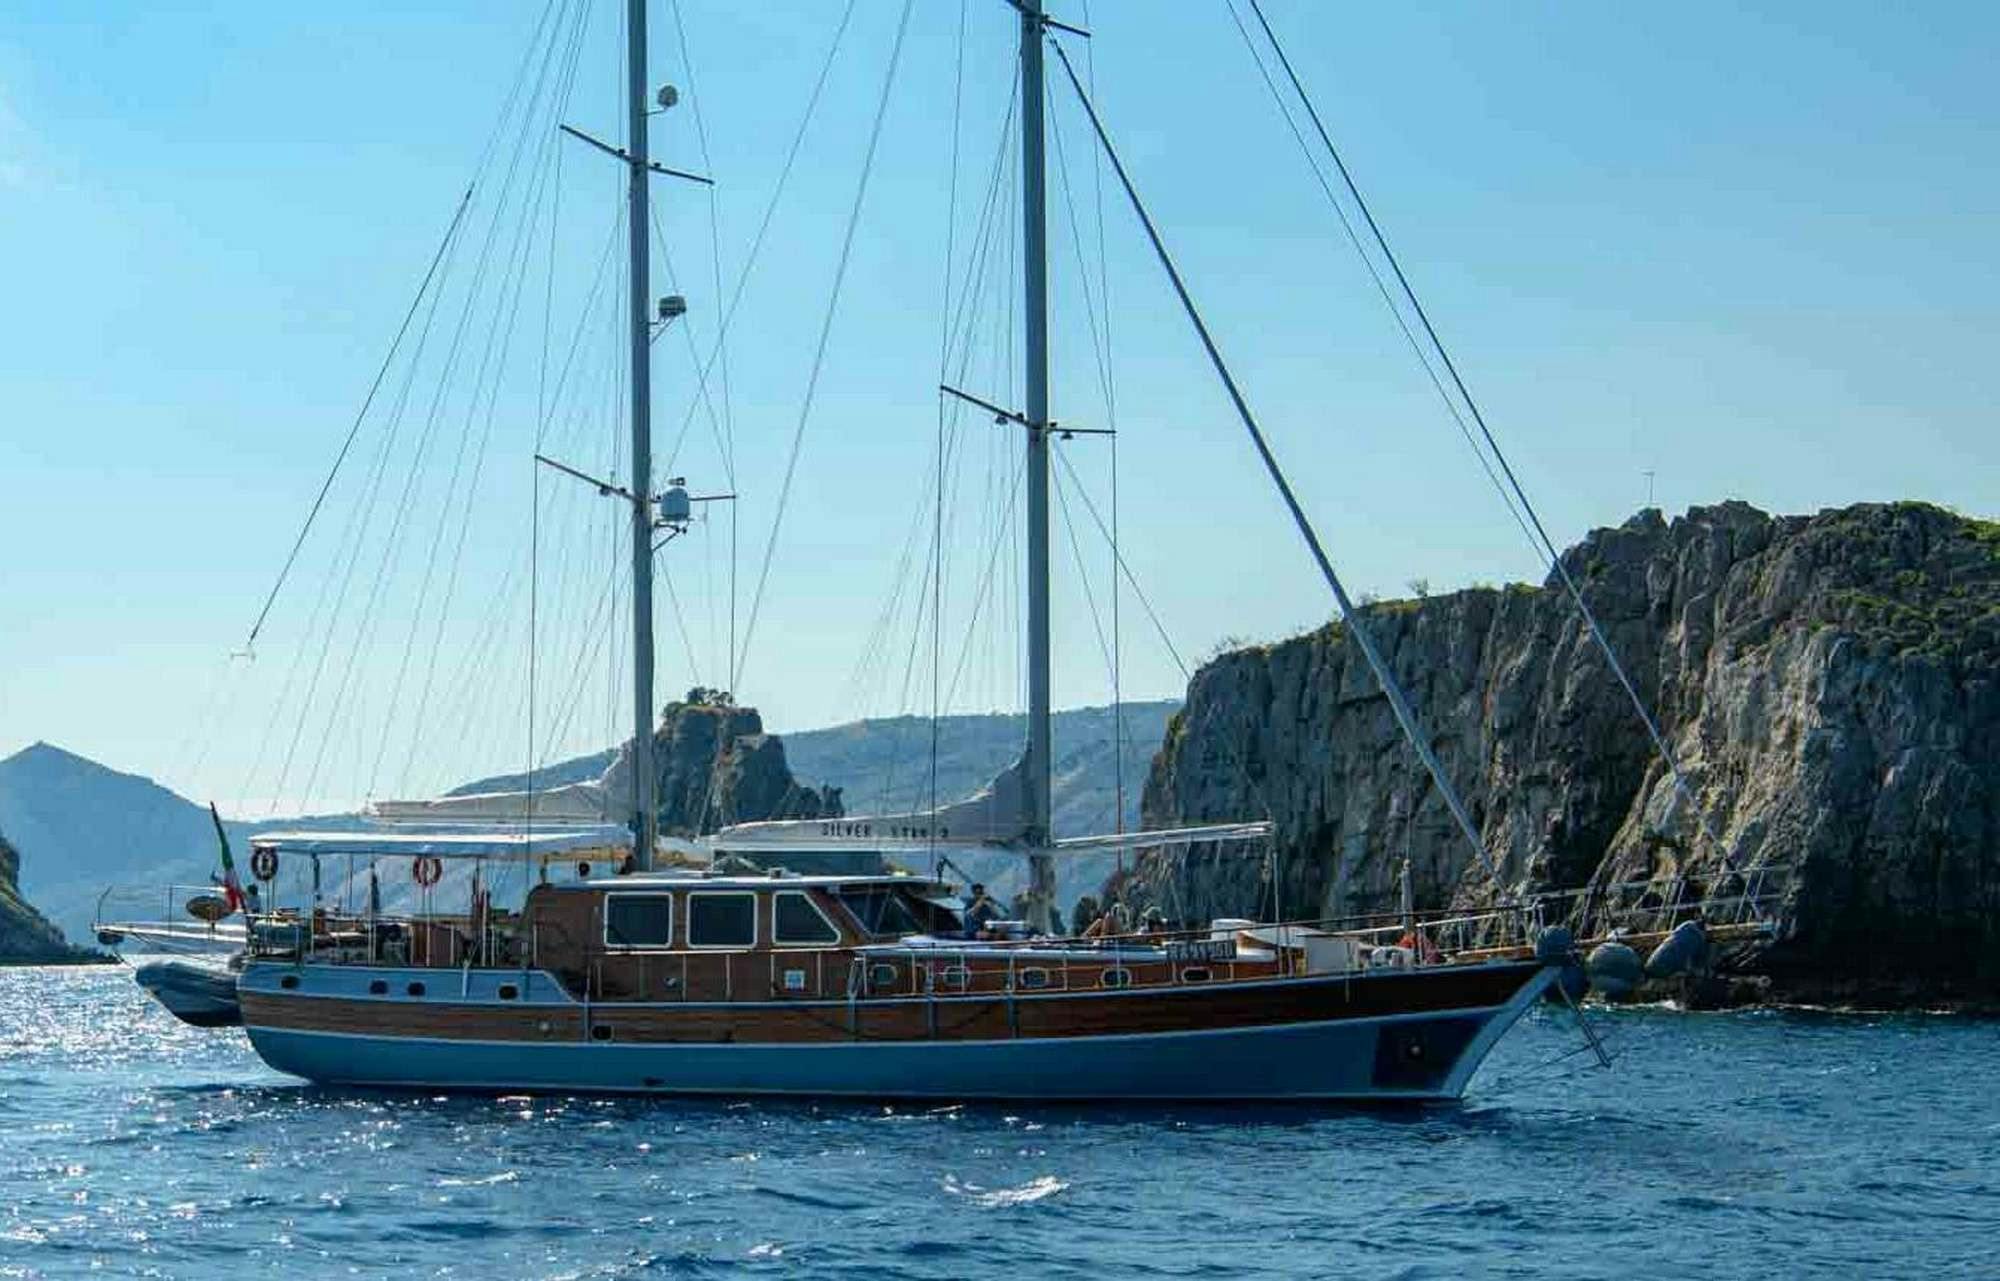 SILVER STAR 2 - Yacht Charter Castiglioncello & Boat hire in Fr. Riviera & Tyrrhenian Sea 1